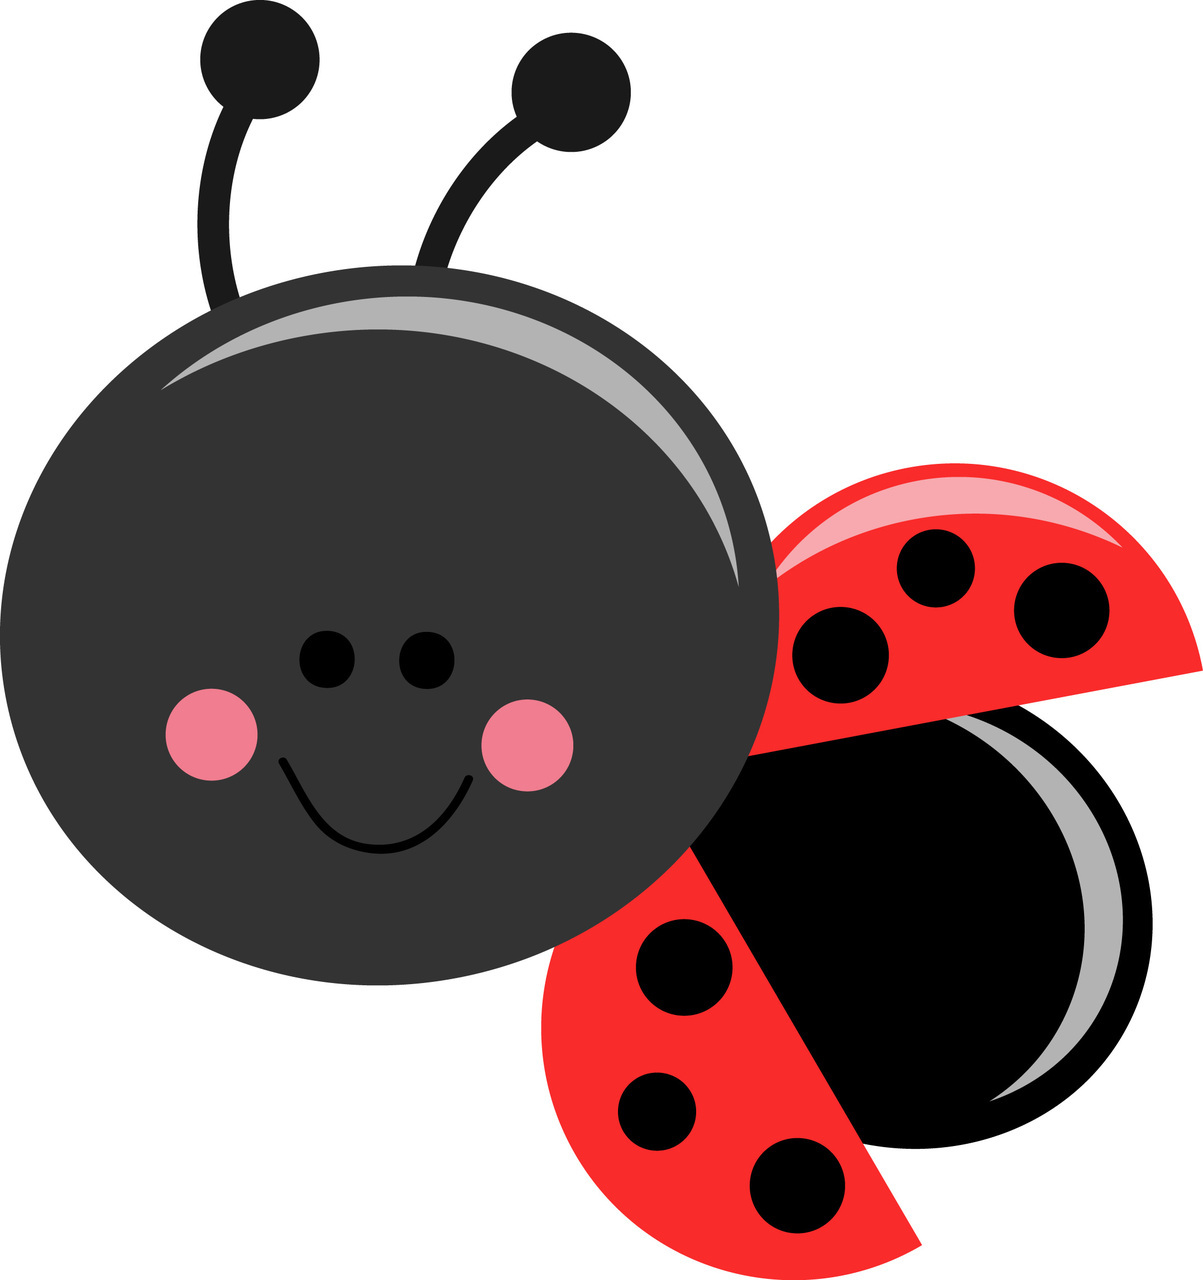 Cute Ladybug Images Clipart B - Ladybug Images Clip Art